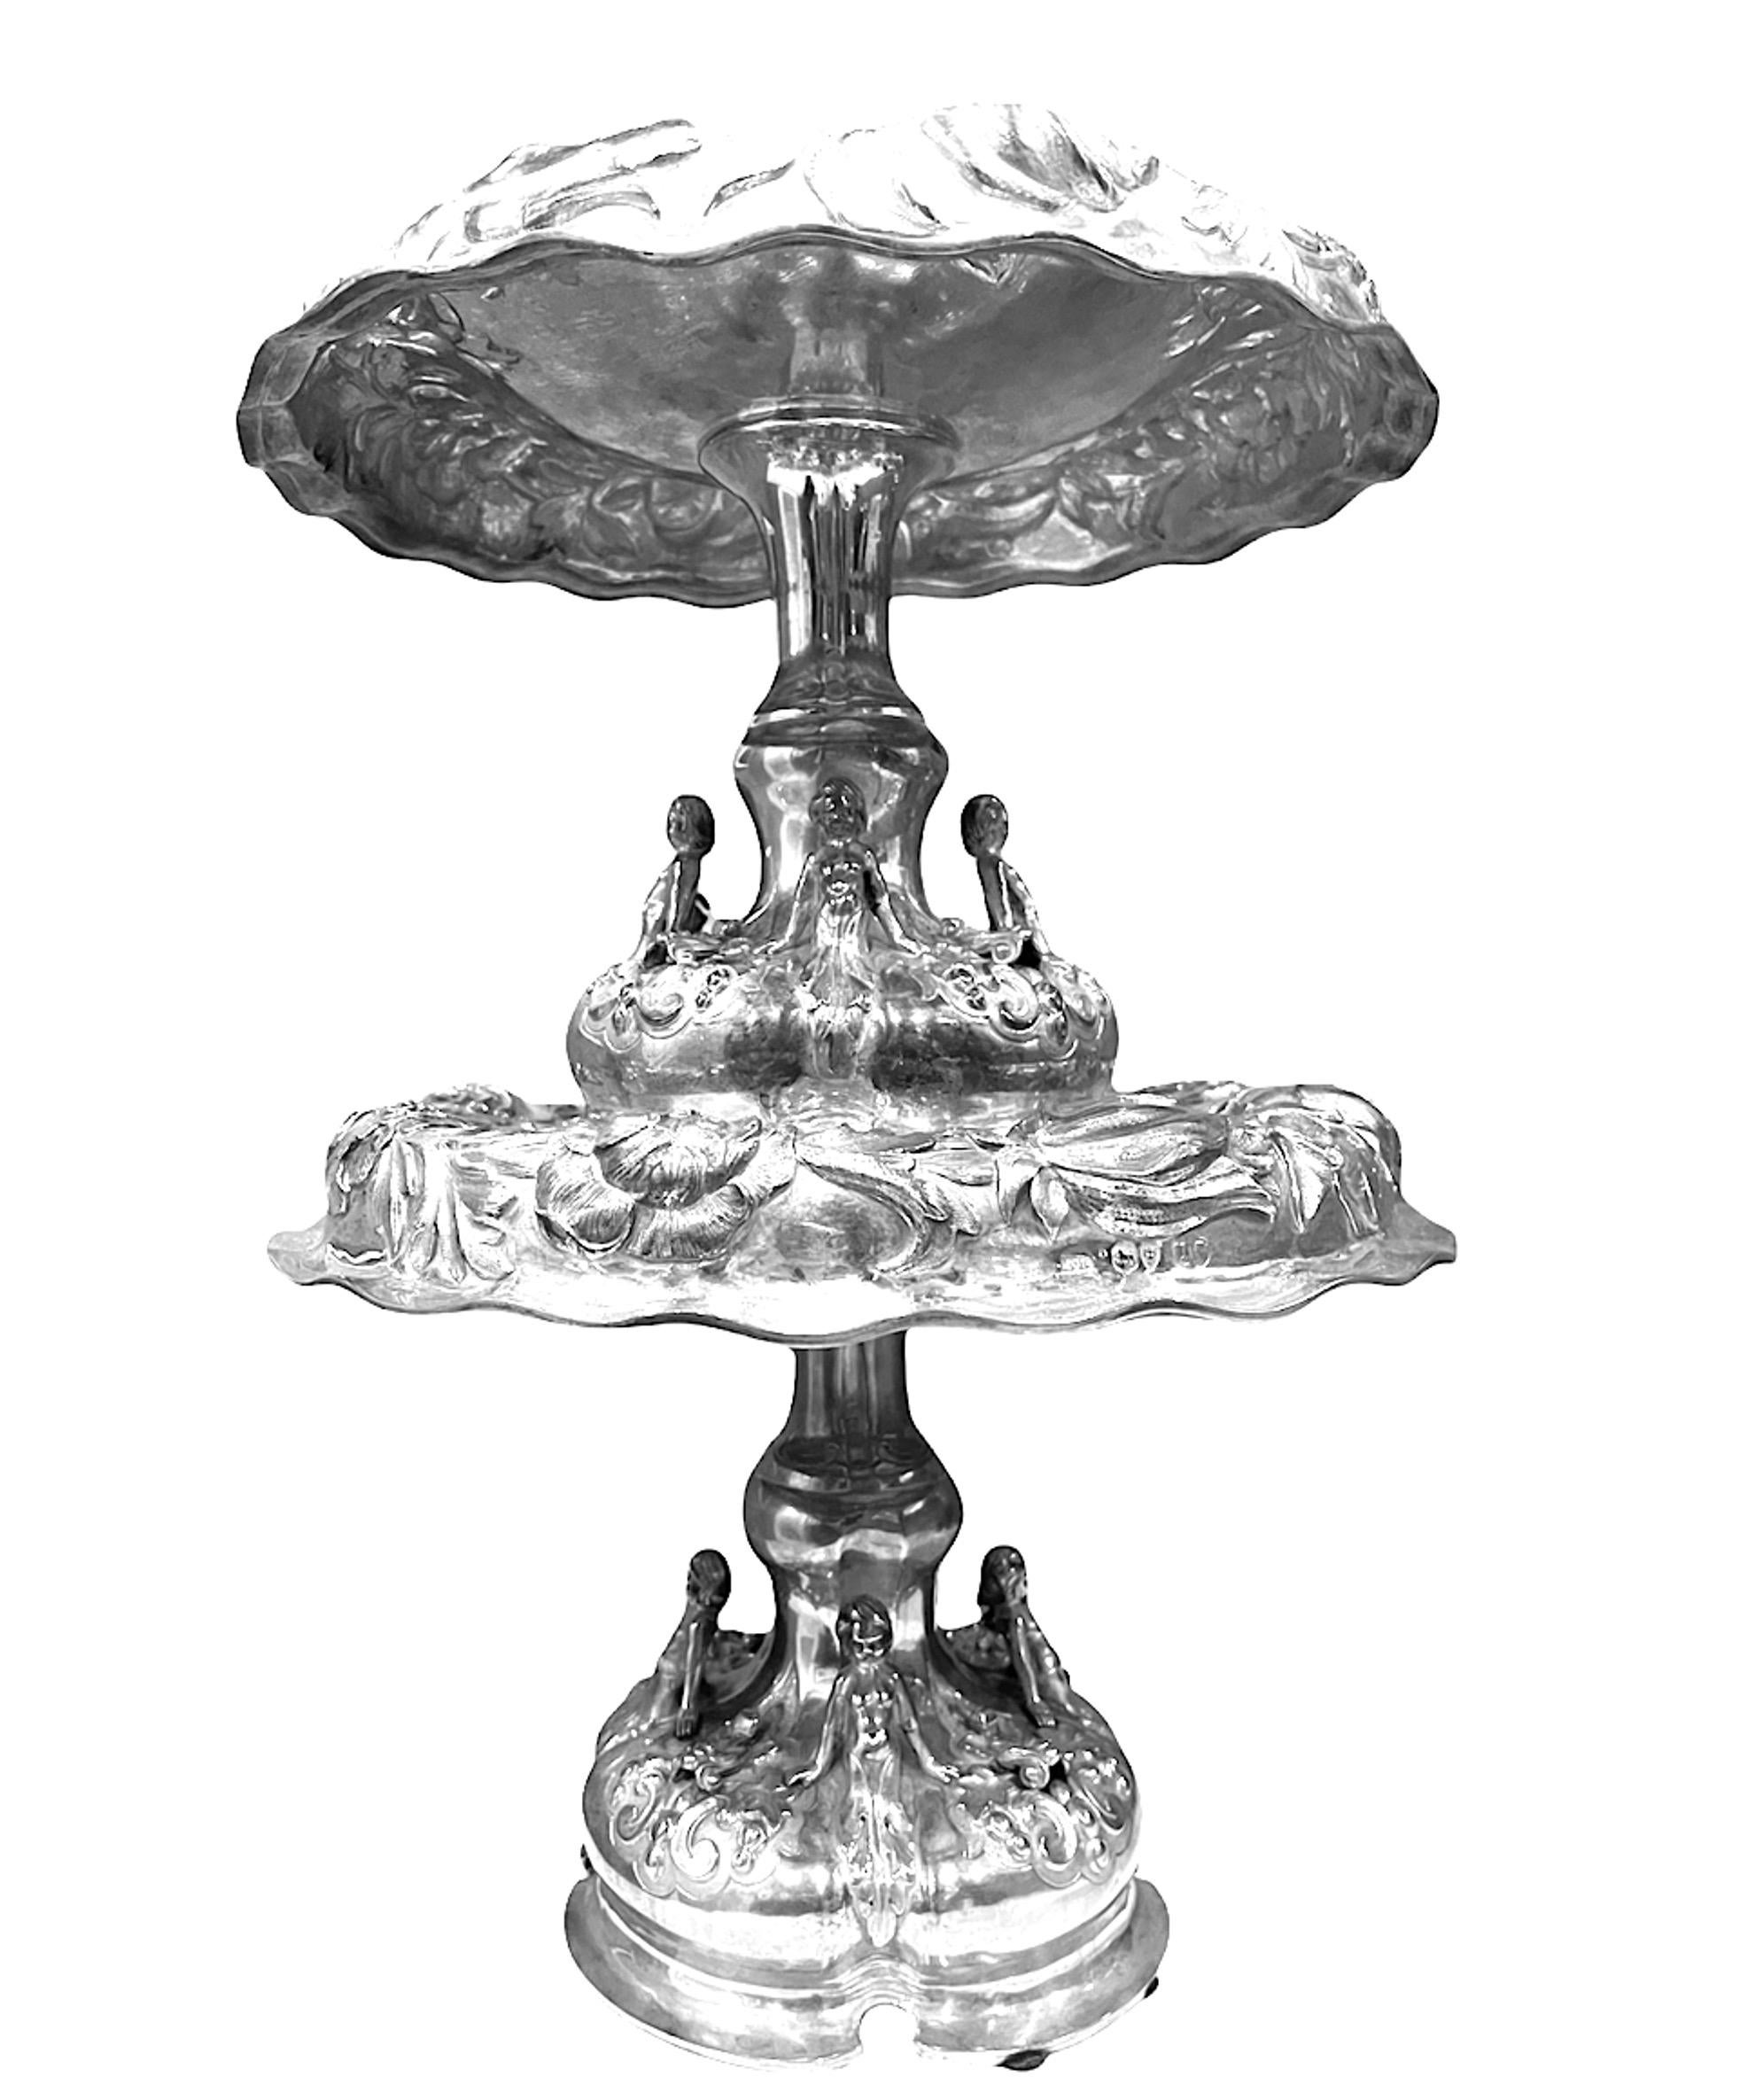 Paire de tazze en argent de style victorien du 19e siècle anglais (1875) par Alexander MacRae. Ceux-ci sont audacieusement ciselés de fleurs et de feuillages, les bases étant ornées de demi-figures et d'un bouclier gravé d'armoiries. Les deux pièces